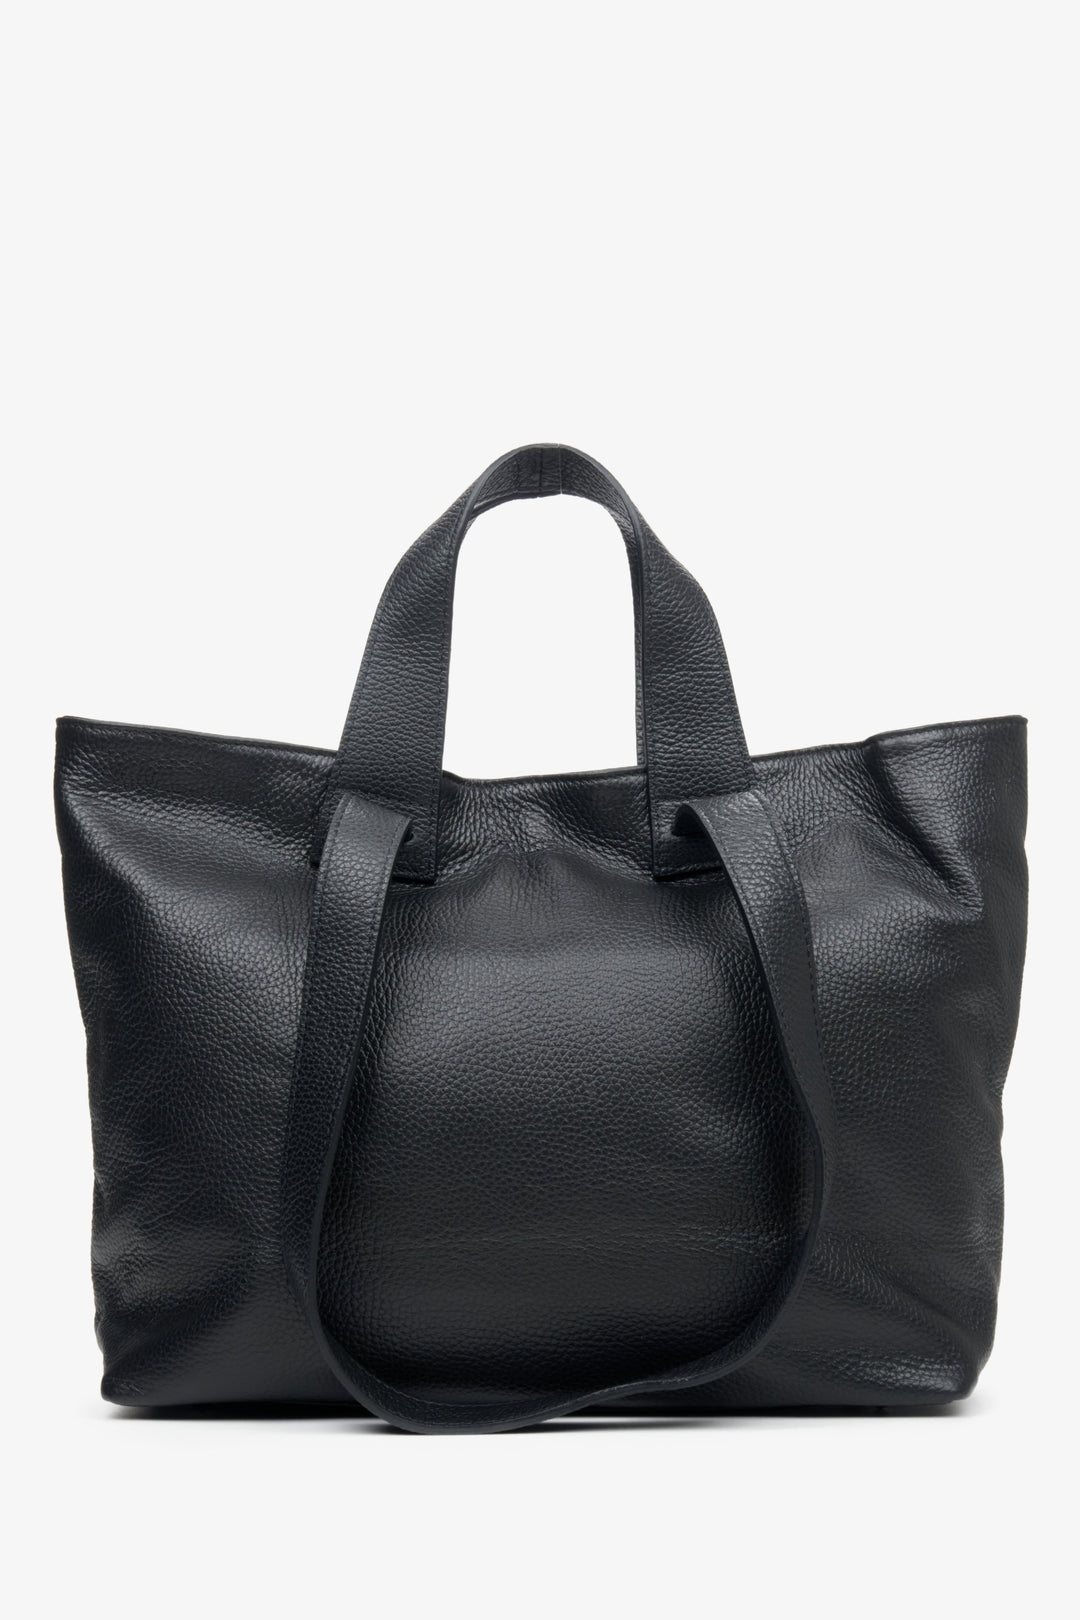 Duża, czarna torebka damska o kroju shopperki w kolorze czarnym.